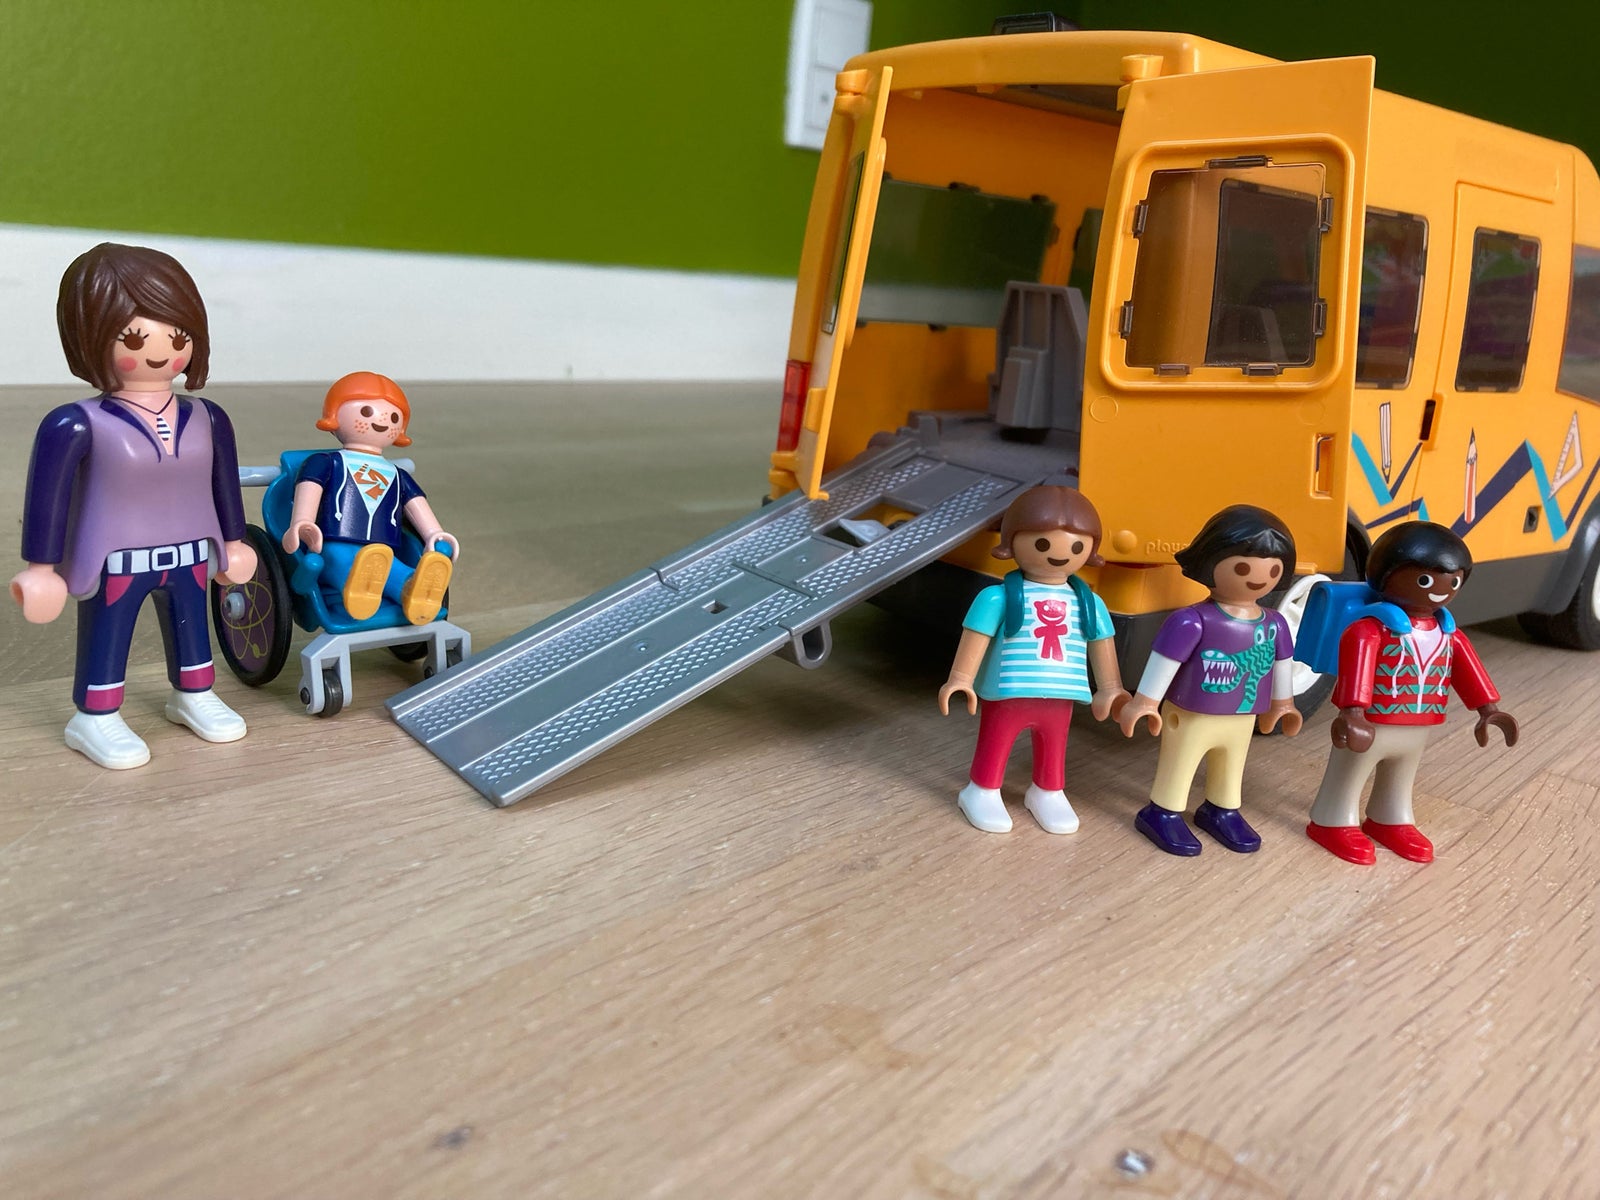 Playmobil 9419 - Bus scolaire - playmobil